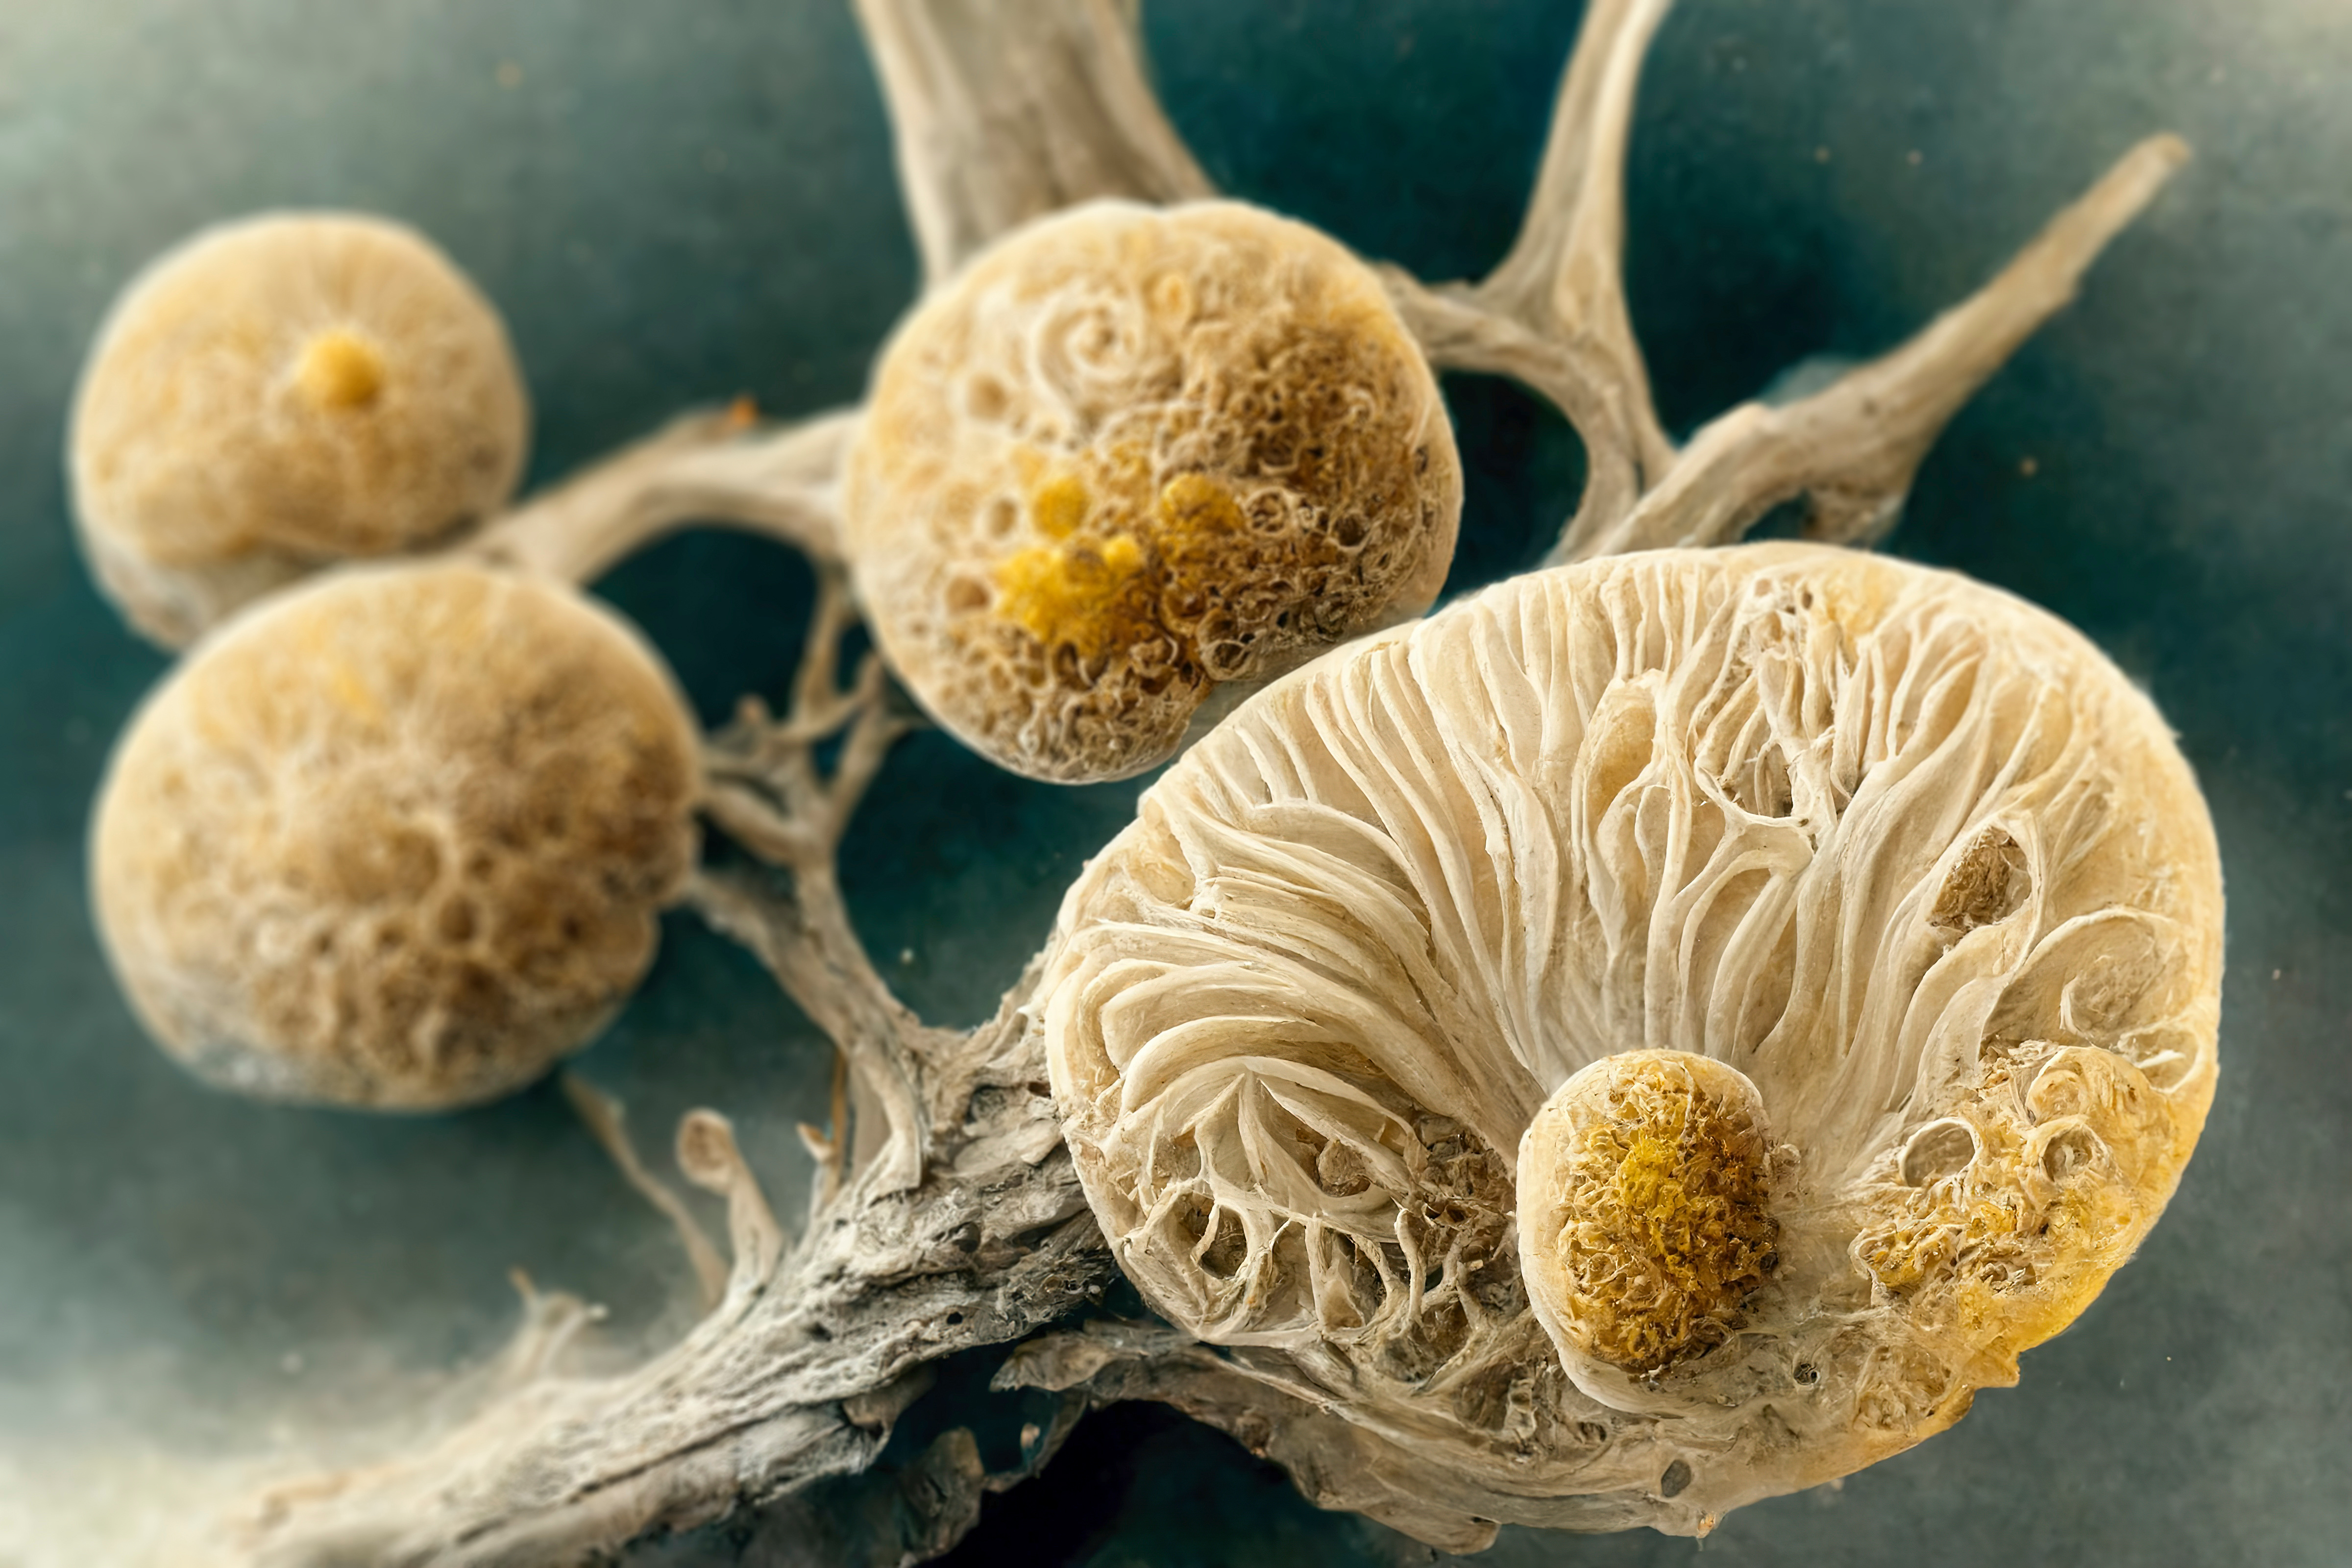 Les champignons peuvent être pathogènes pour les humains. © Dr_Microbe, Adobe Stock